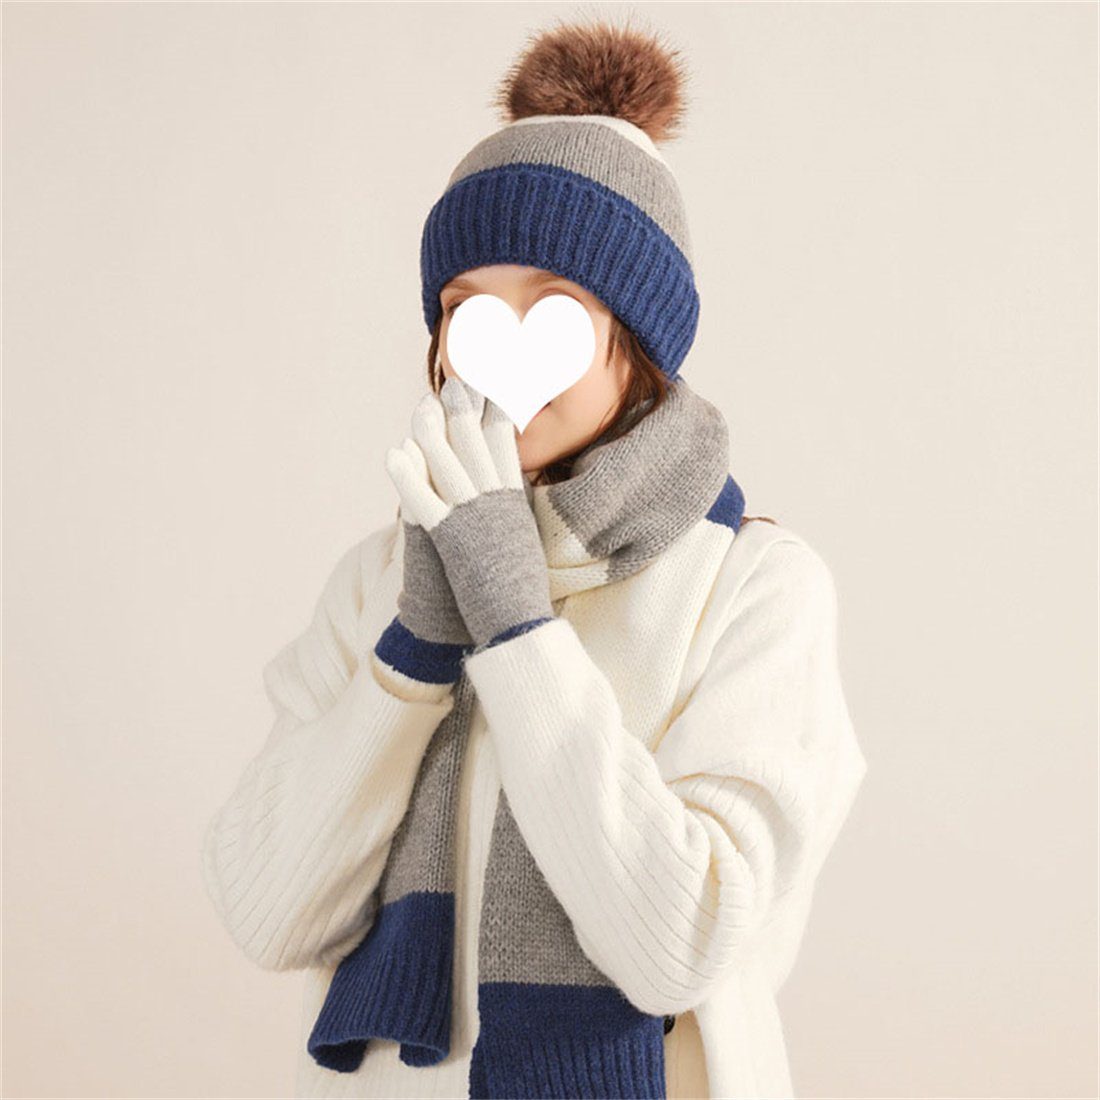 DÖRÖY Strickmütze Winter Bunte Modische Wollmütze, Warme Mütze Schal Handschuhe 3er Set Weiß + Blau | Strickmützen